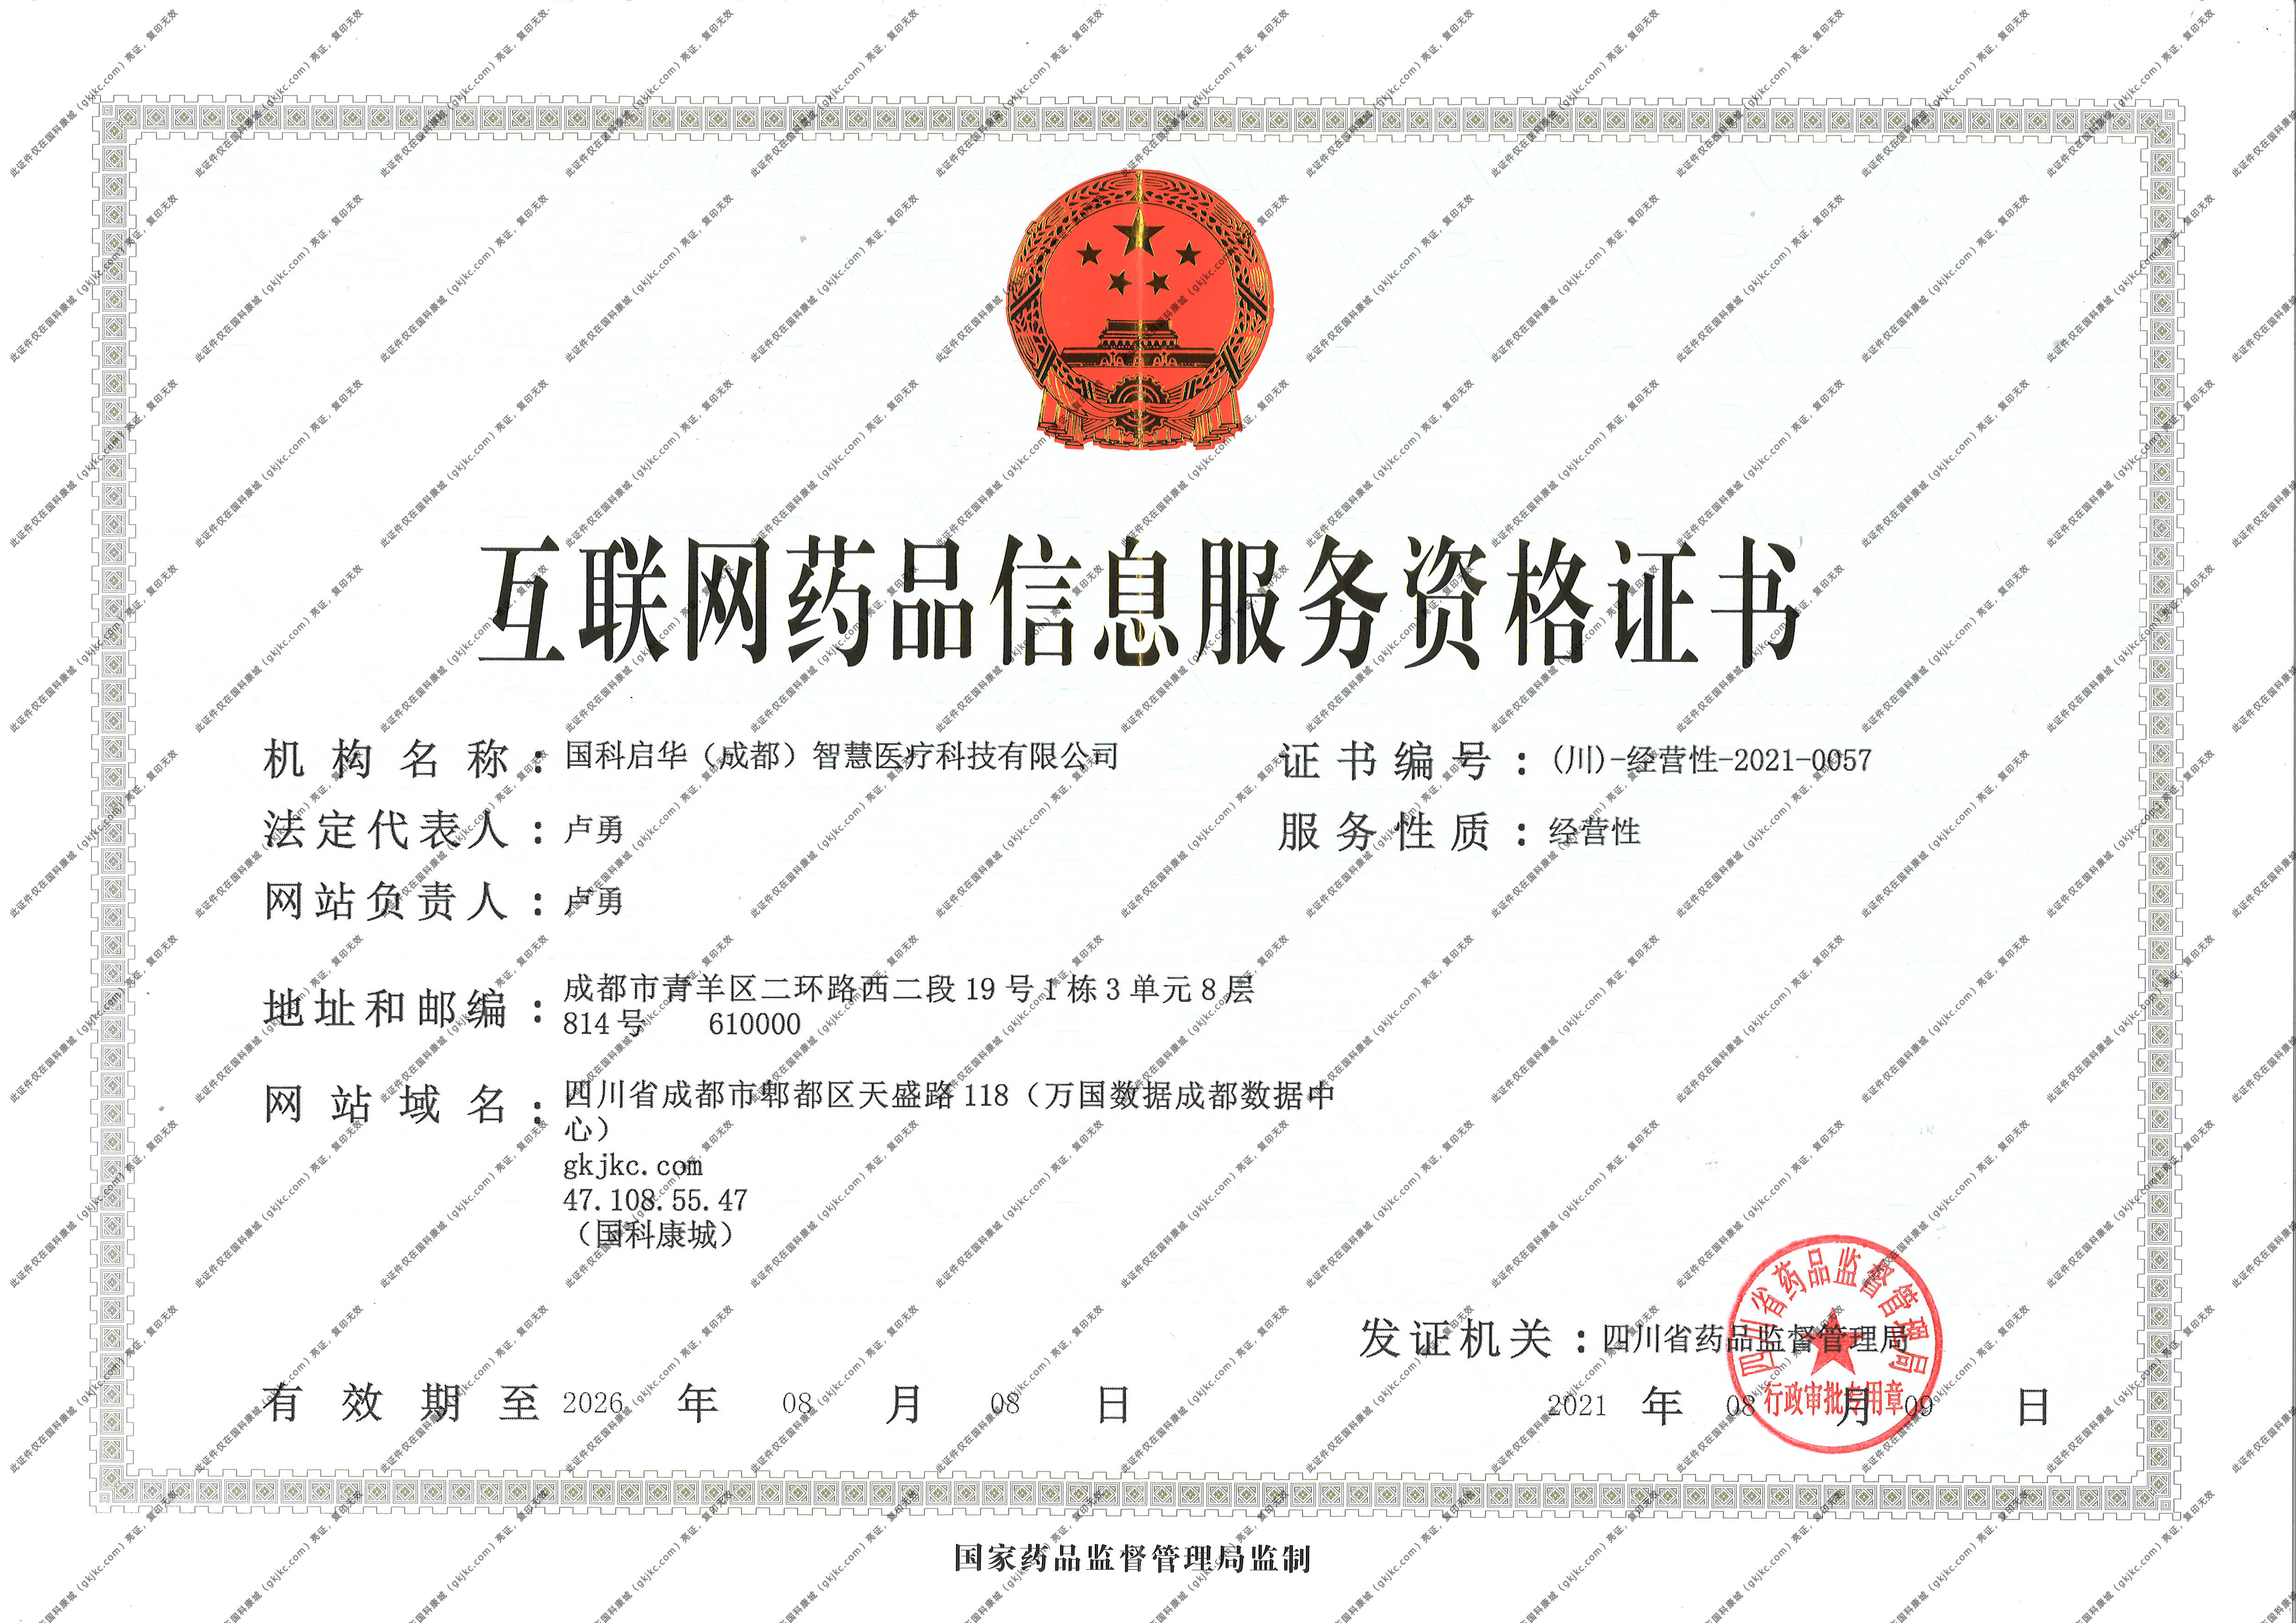 互联网药品信息服务资格证书 (川）-经营性-2021-0057